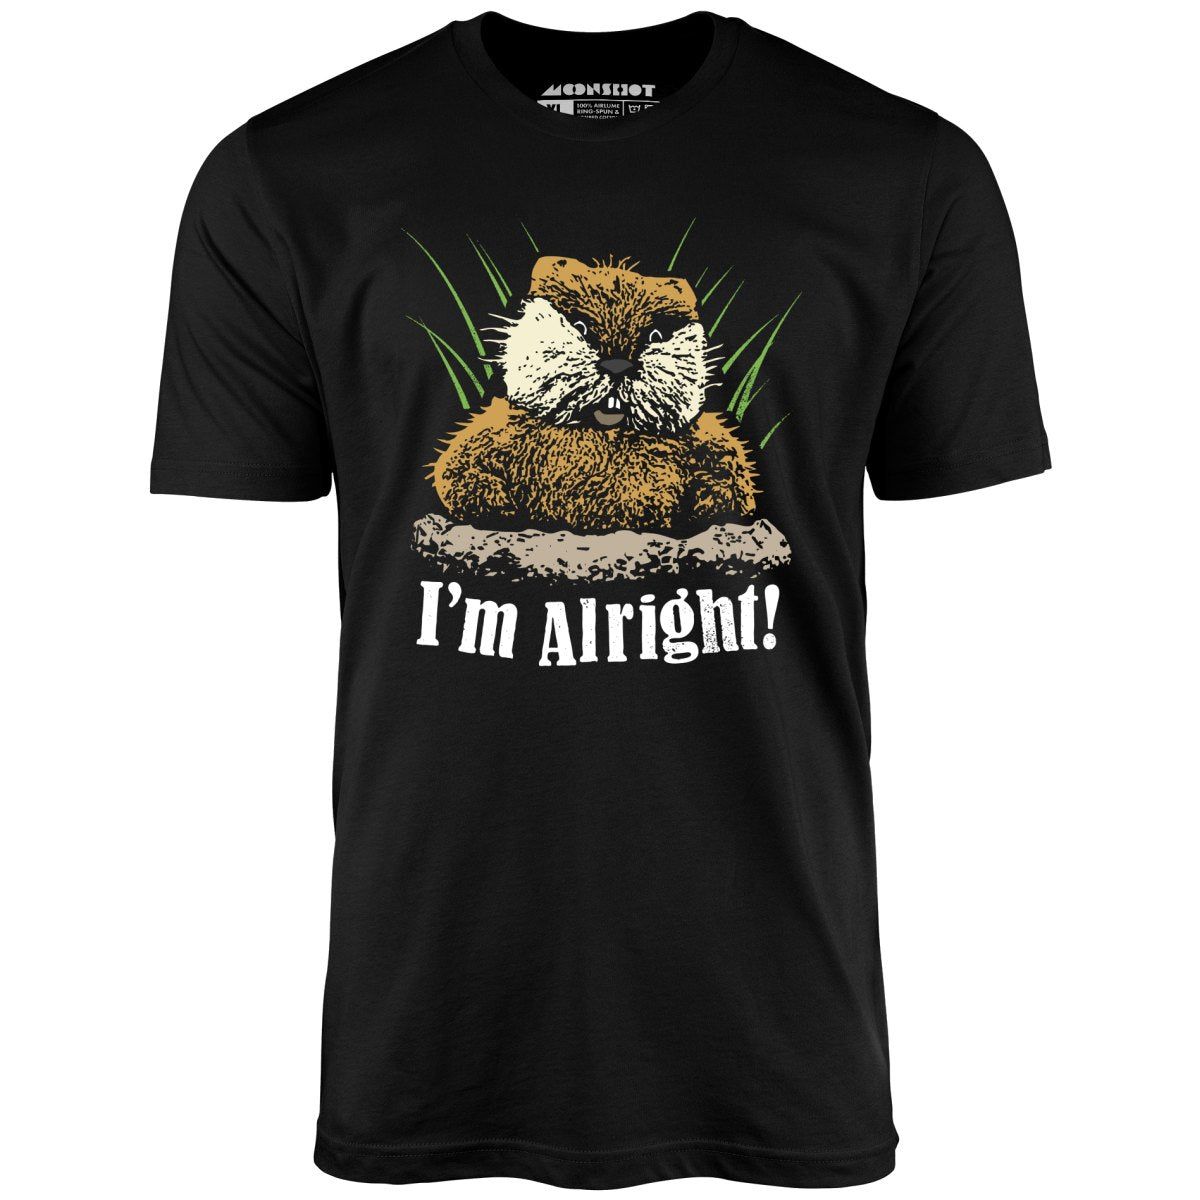 I'm Alright - Unisex T-Shirt